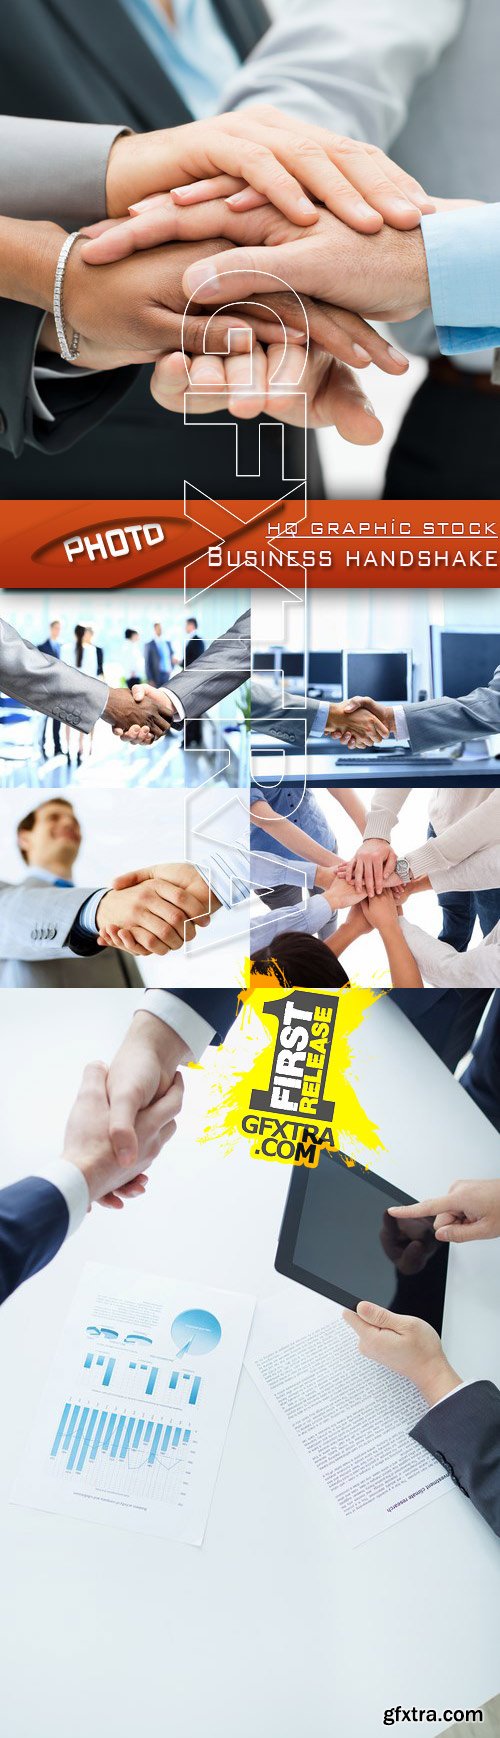 Stock Photo - Business handshake